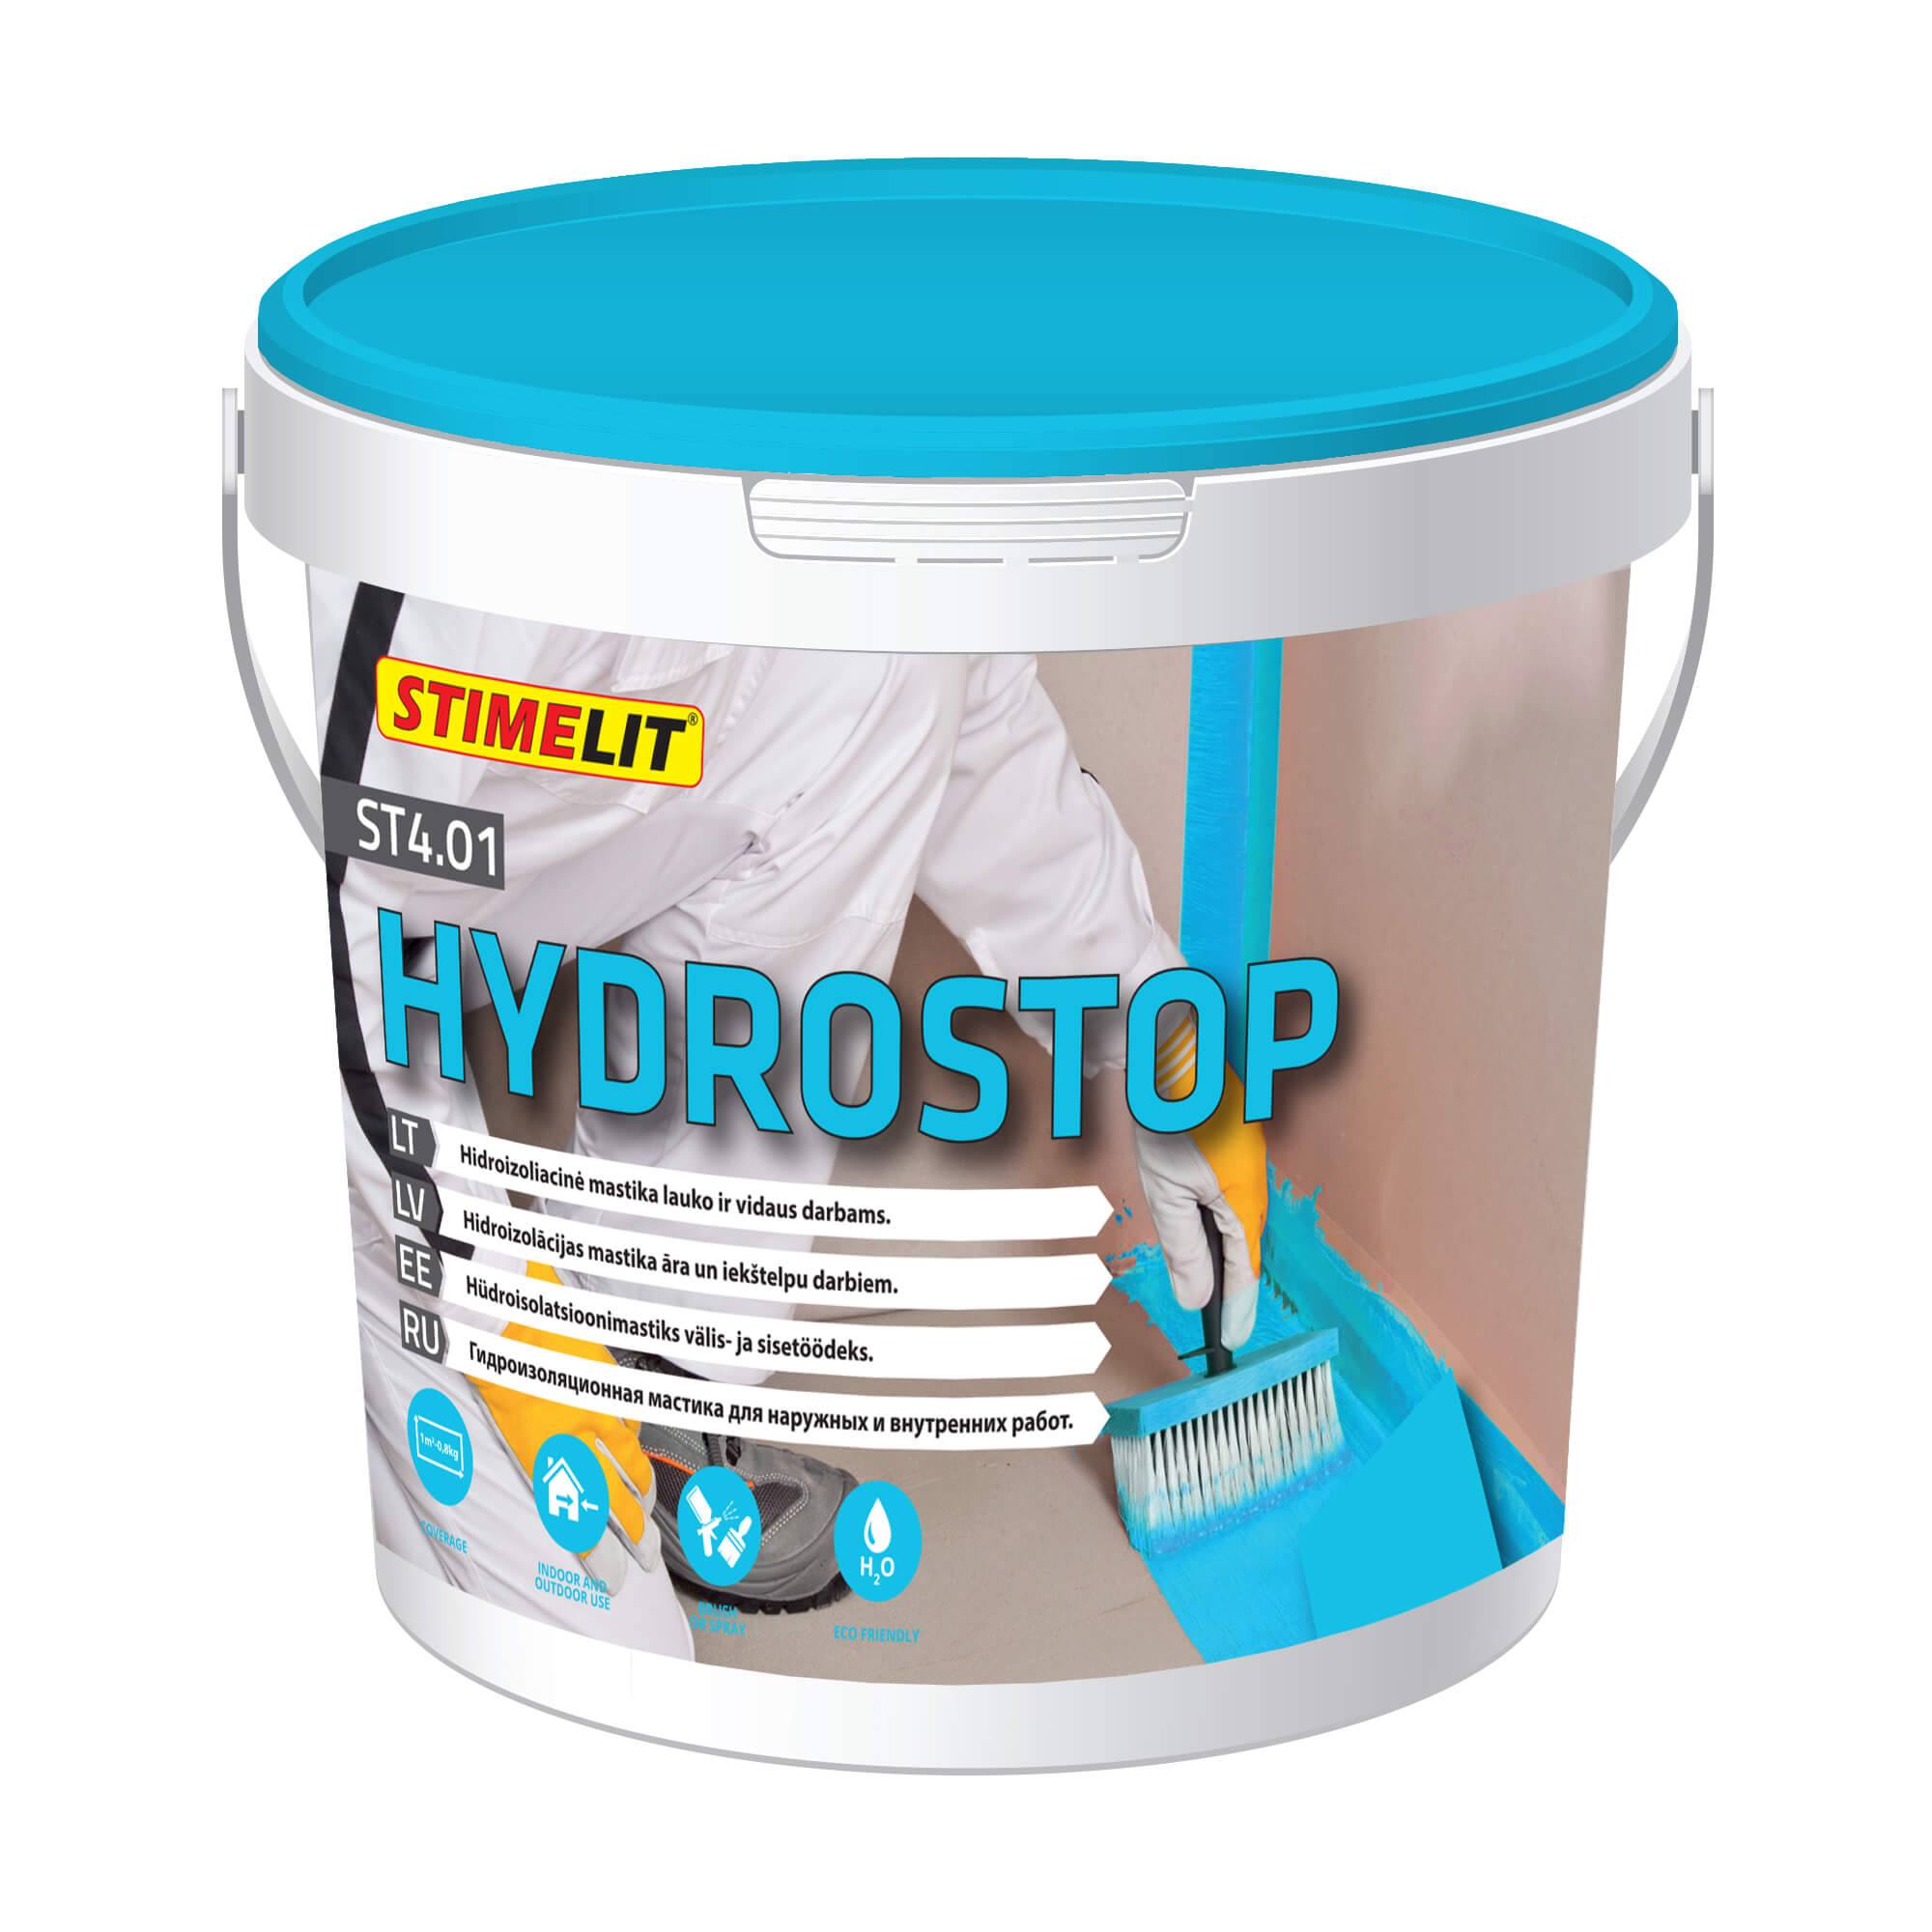 ST4.01 HYDROSTOP Гидроизоляционная мастика для наружных и внутренних работ